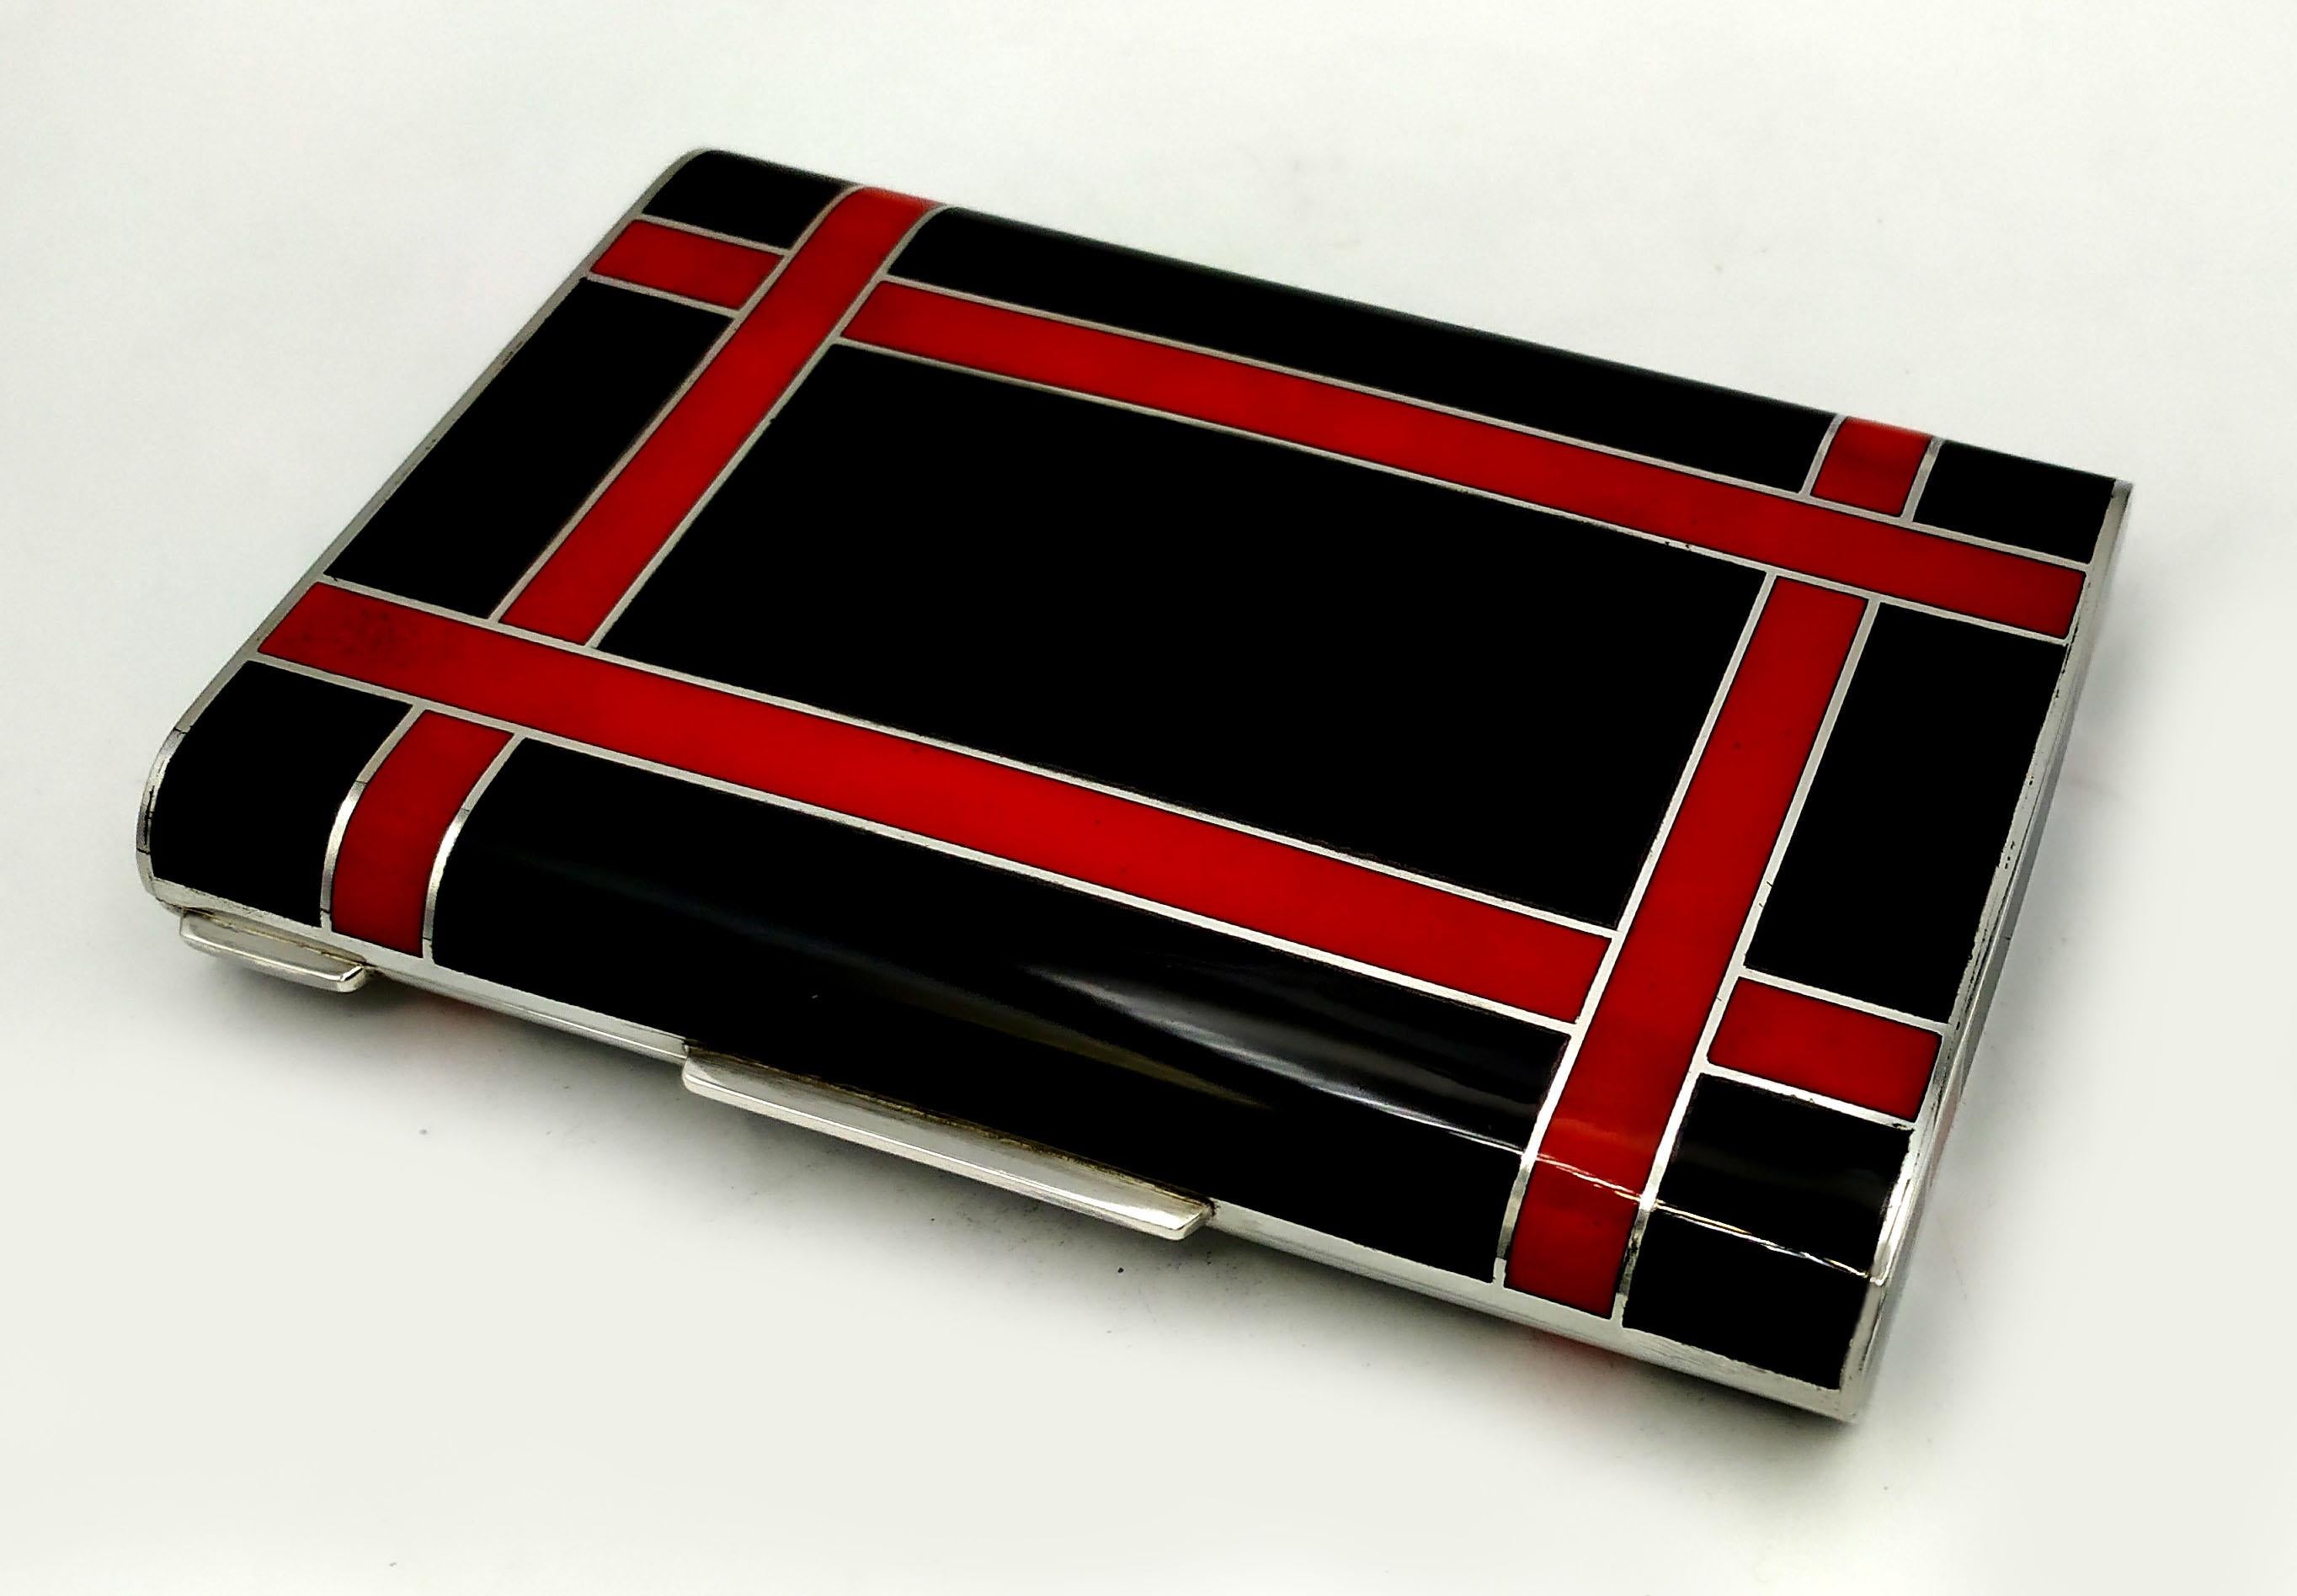 L'émail noir et rouge de la boîte est inspiré de dessins de Louis Cartier du début des années 1900 dans le style Art déco et recréé pour Cartier USA dans les années 1980.
Il est en 925/1000 sterling.
La boîte Black and Red présente un motif